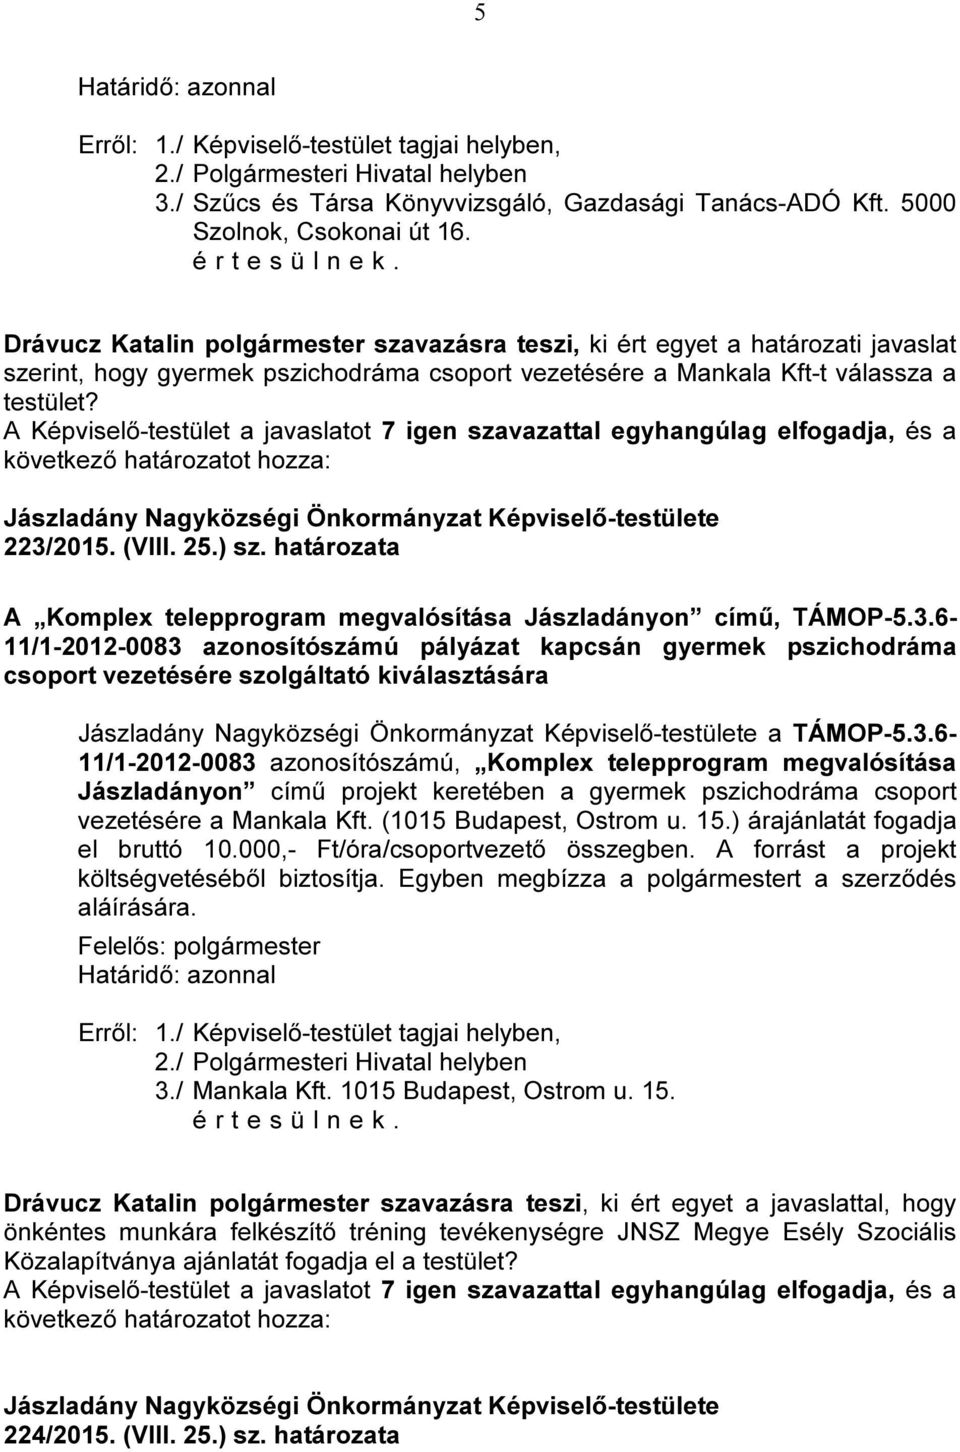 határozata A Komplex telepprogram megvalósítása Jászladányon című, TÁMOP-5.3.